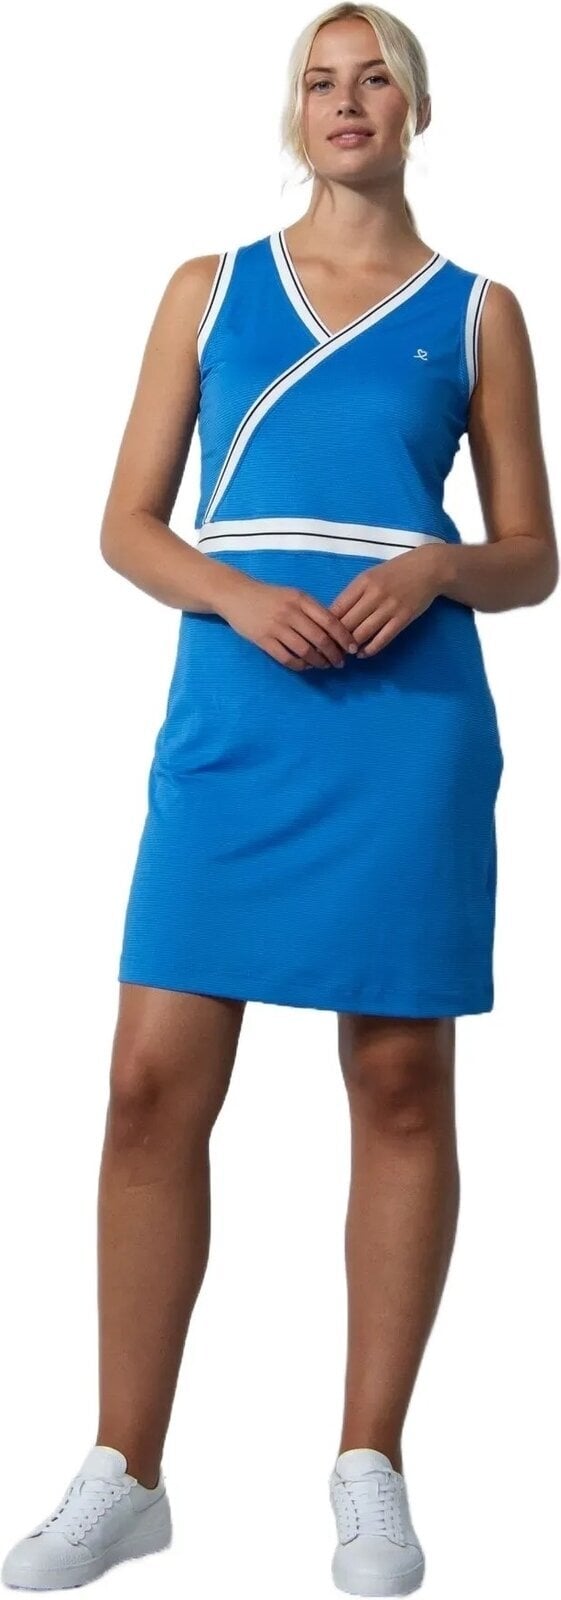 Skirt / Dress Daily Sports Kaiya Dress Cosmic Blue S